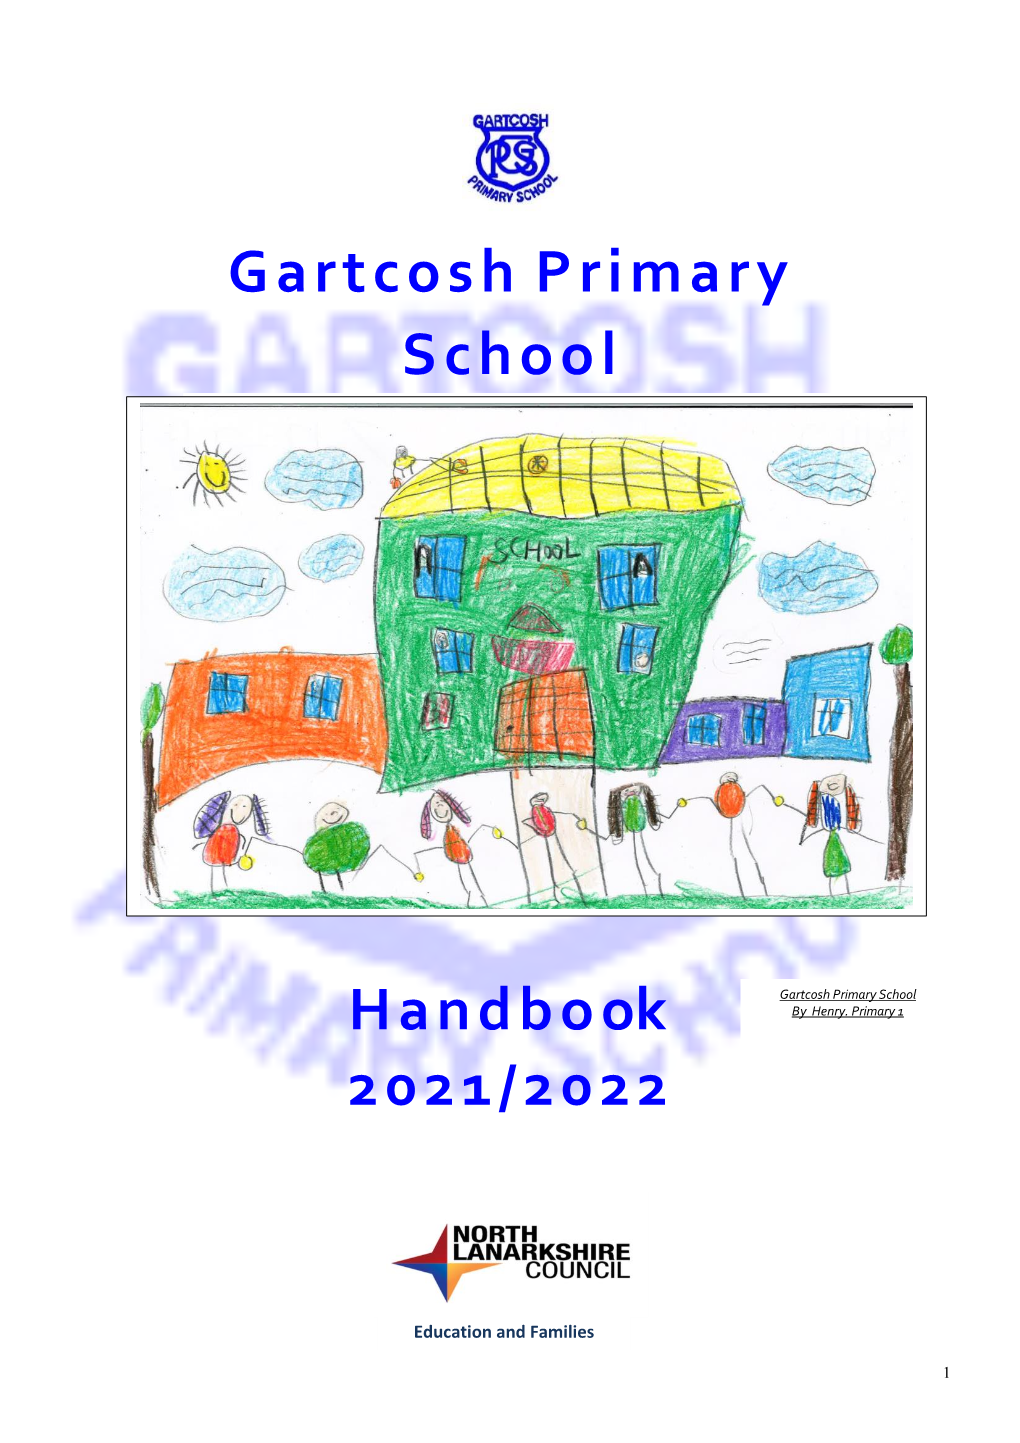 Gartcosh Primary School Handboo K 2021/2022